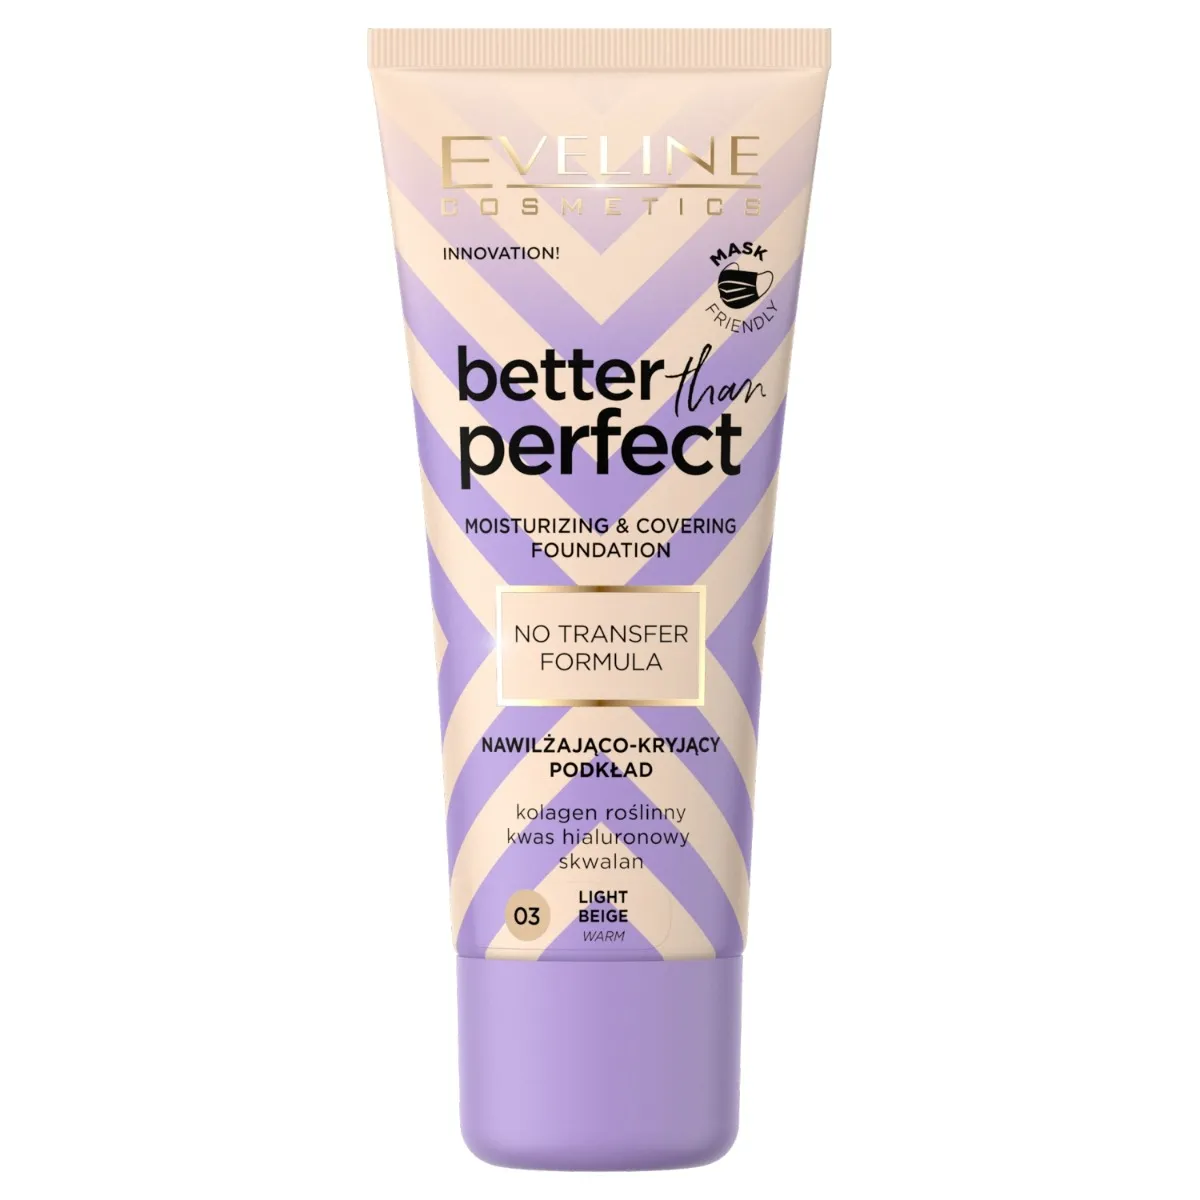 Eveline Cosmetics Better Than Perfect Nawilżająco-kryjący podkład z formułą No Transfer nr 03 Light Beige, 30 ml